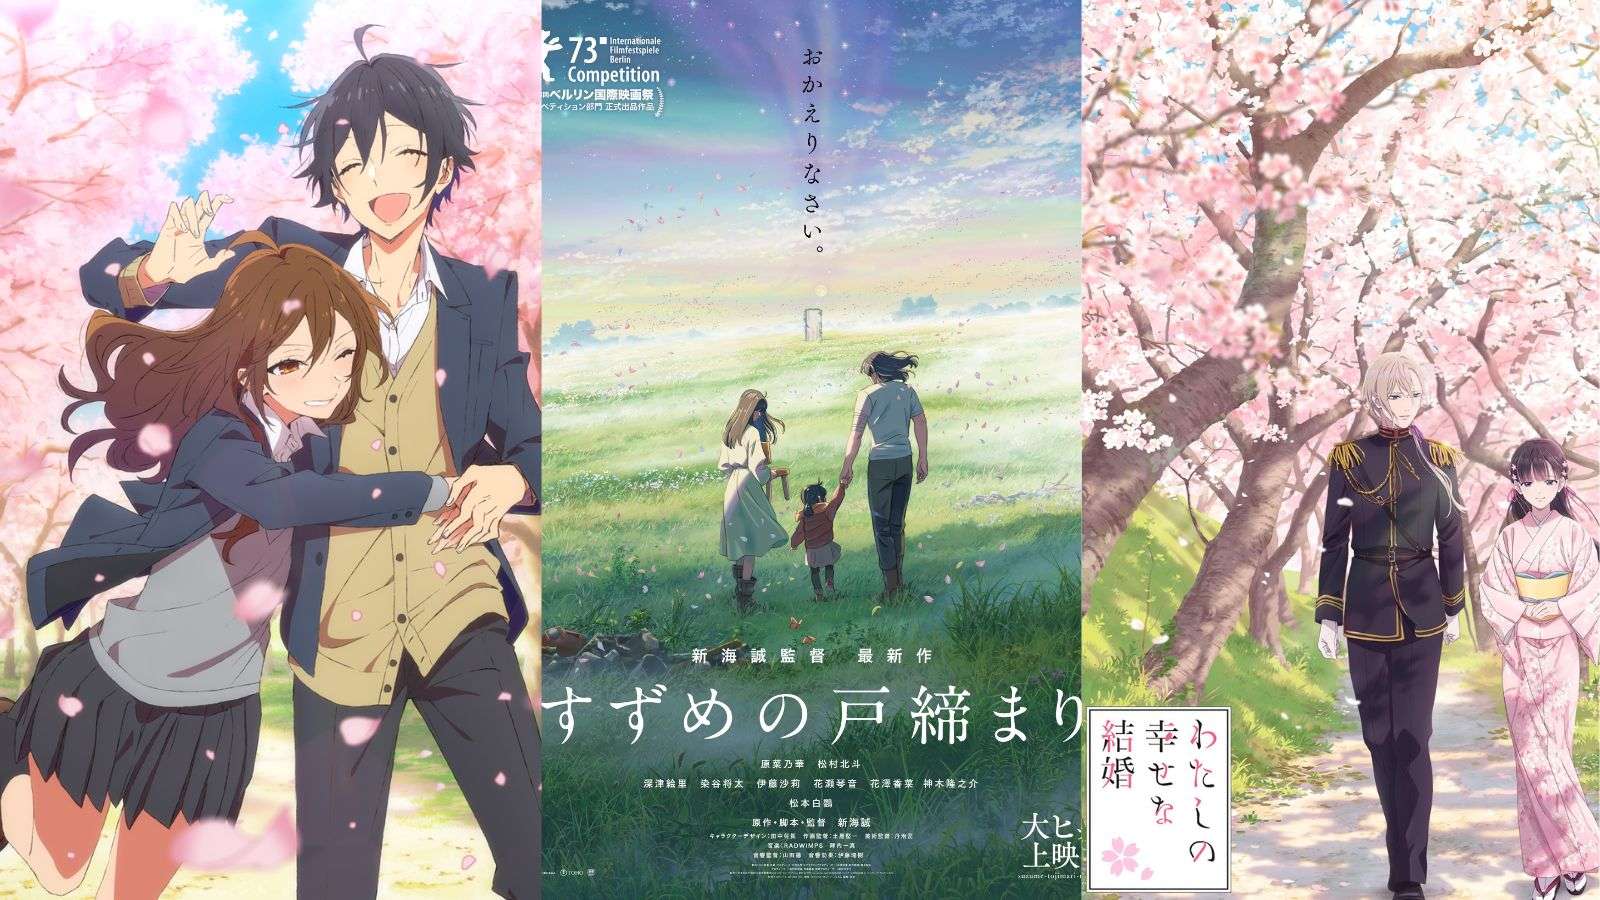 Romantic anime series Valentine's Day